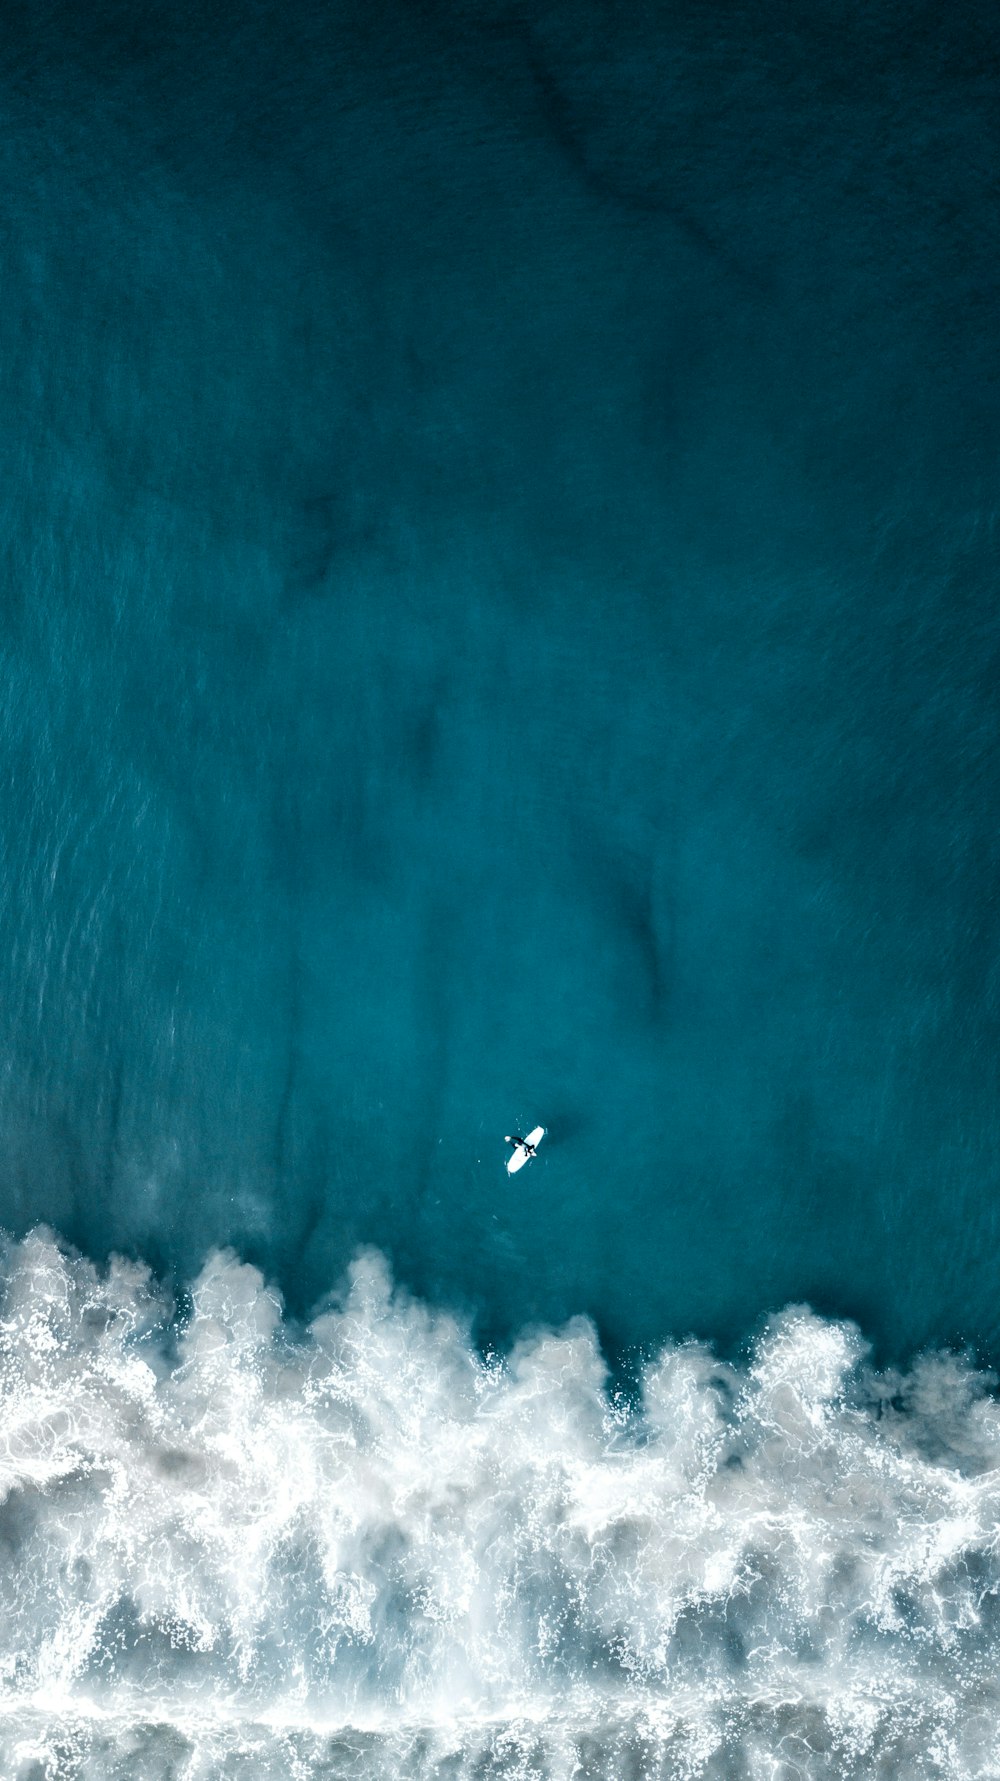 Una veduta aerea di un surfista che cavalca un'onda